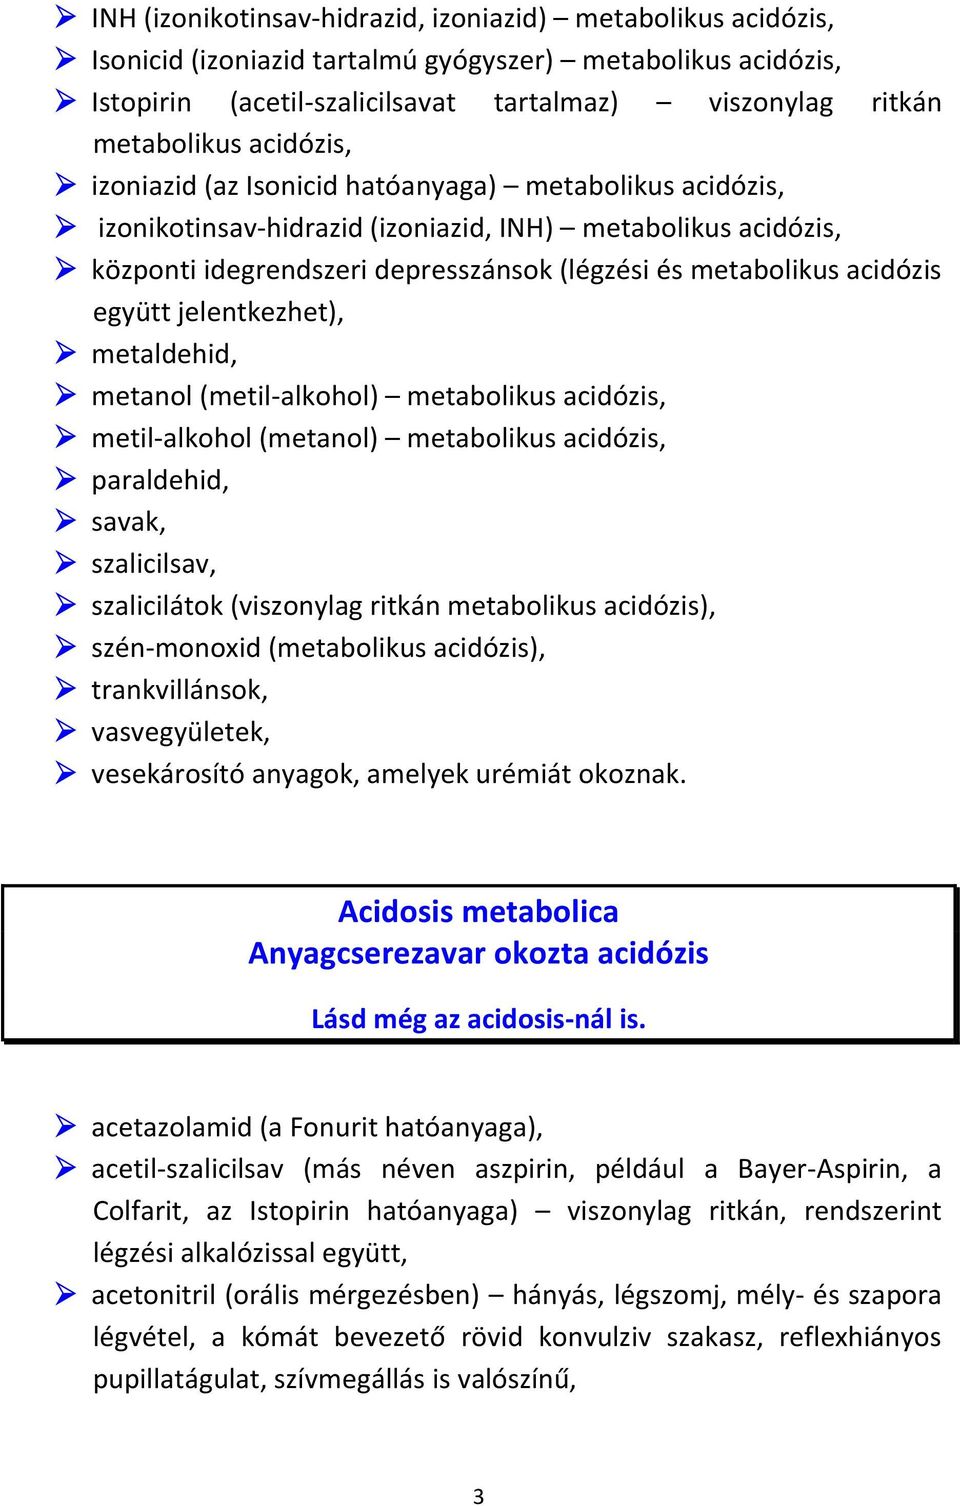 együtt jelentkezhet), metaldehid, metanol (metil-alkohol) metabolikus acidózis, metil-alkohol (metanol) metabolikus acidózis, paraldehid, savak, szalicilsav, szalicilátok (viszonylag ritkán